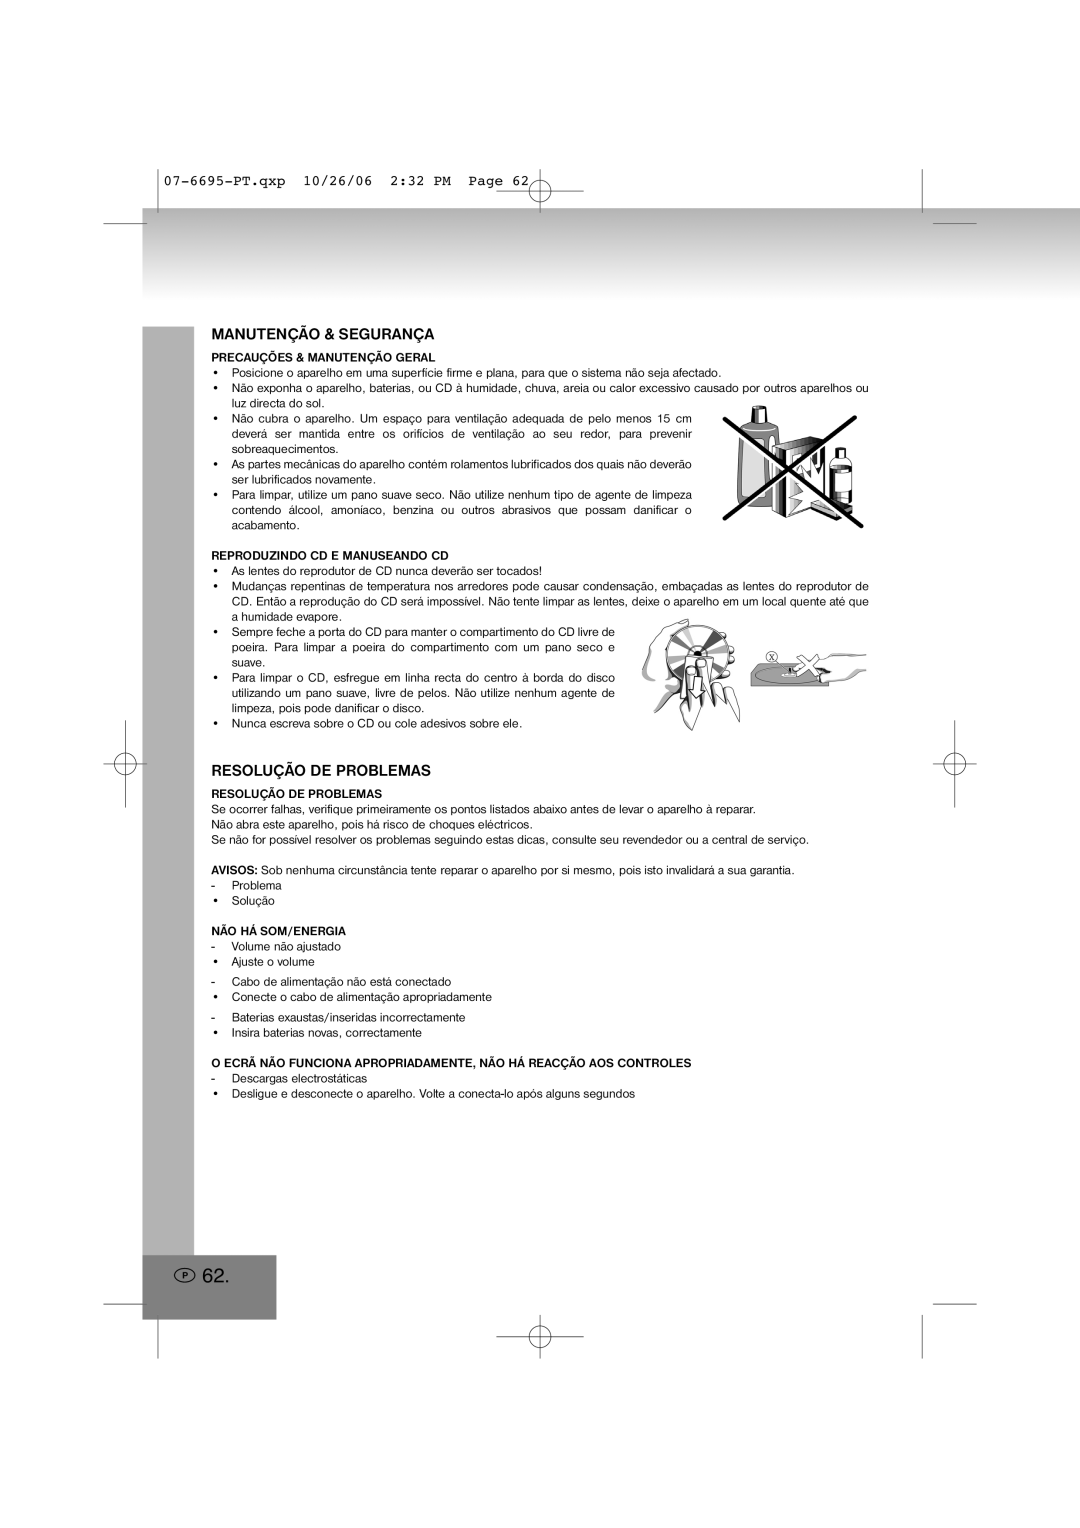 Elta manual Manutenção & Segurança, Resolução De Problemas, 07-6695-PT.qxp10/26/06 2 32 PM Page 